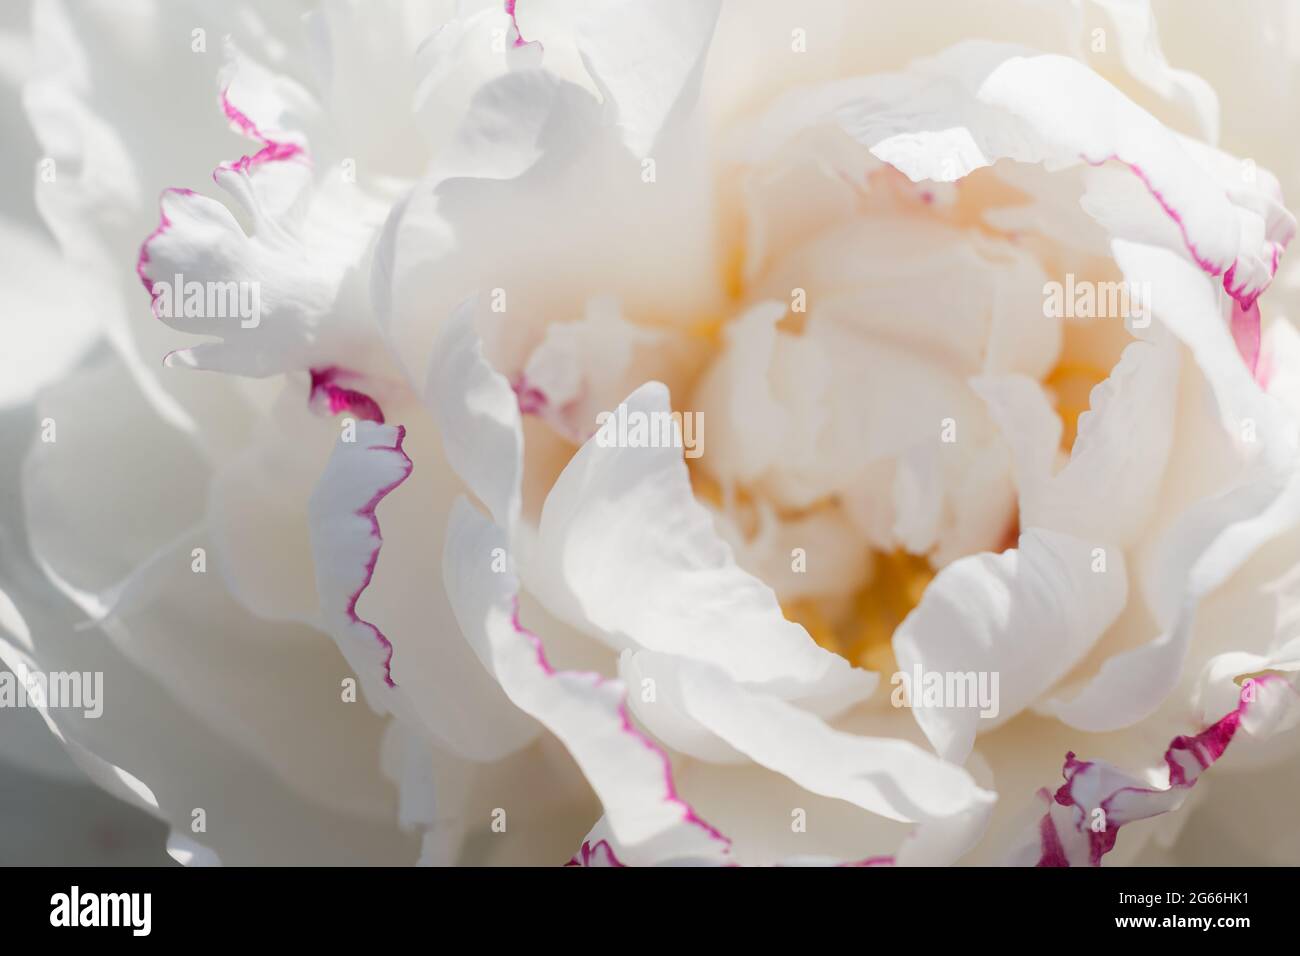 Weiße Pfingstrose aus nächster Nähe. Schöne natürliche Blumenhintergrund. Pfingstrosen-Sorten Festiva maxima weiße Blütenblätter mit rosa Rand Stockfoto